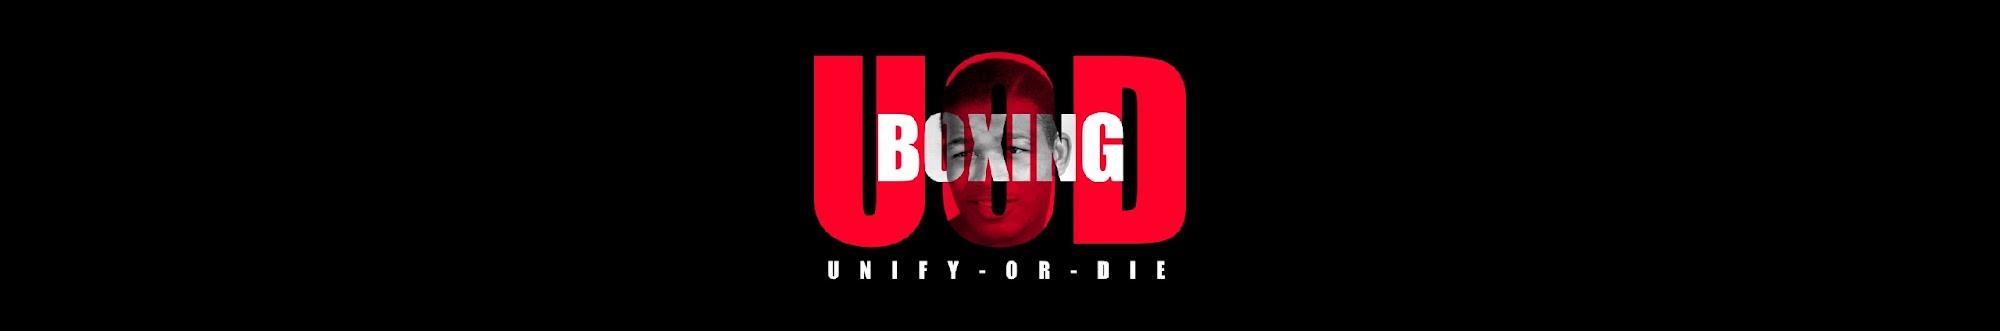 U.O.D Boxing